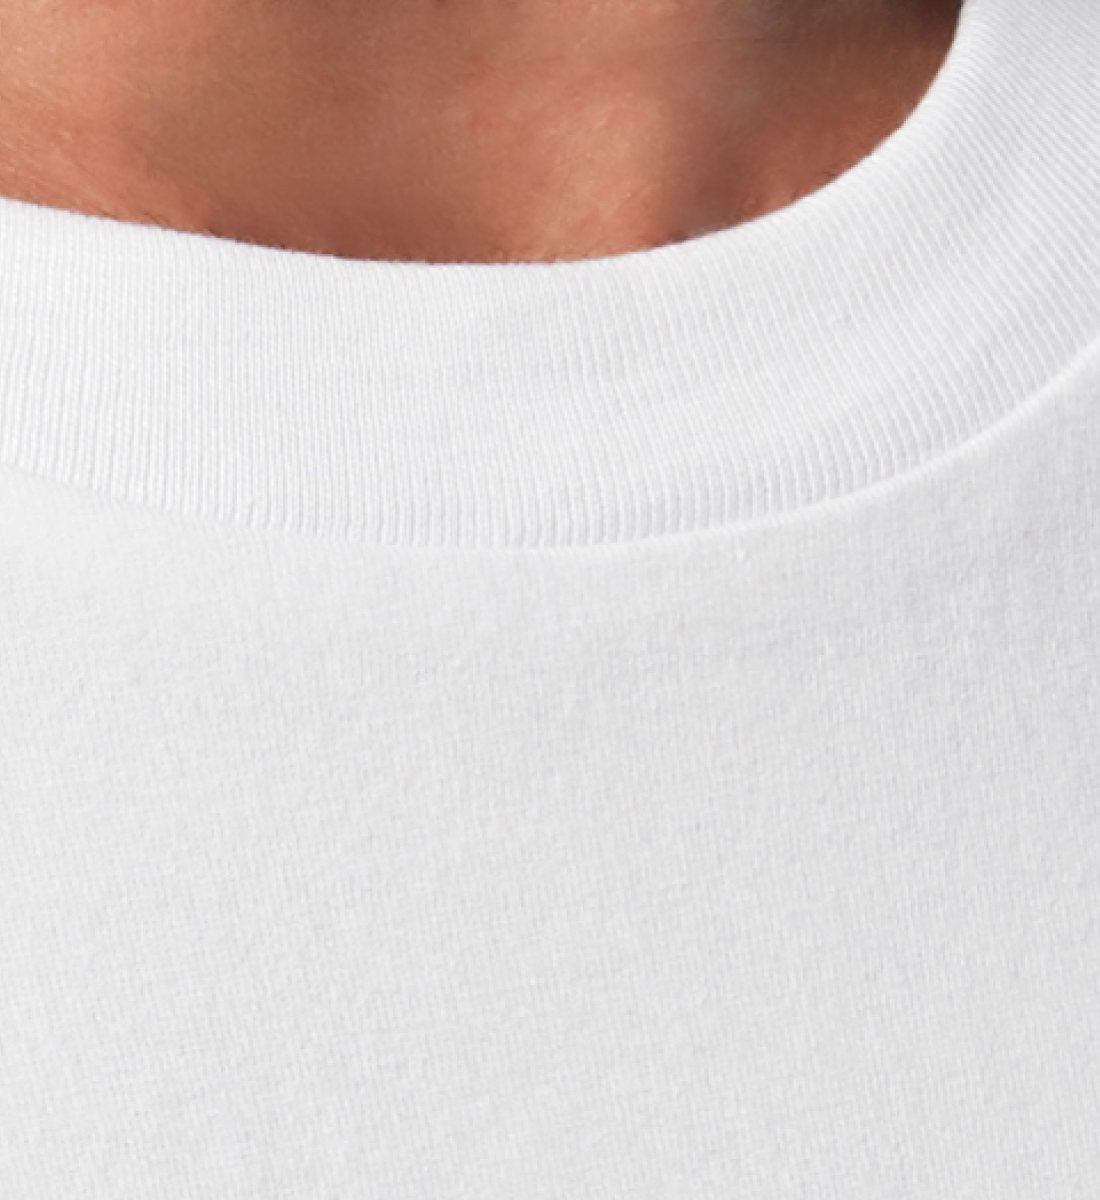 Weißes T-Shirt Unisex Relaxed Fit für Damen und Herren bedruckt mit dem Design der Roger Rockawoo Kollektion E-Guitar Shredding Culture Community